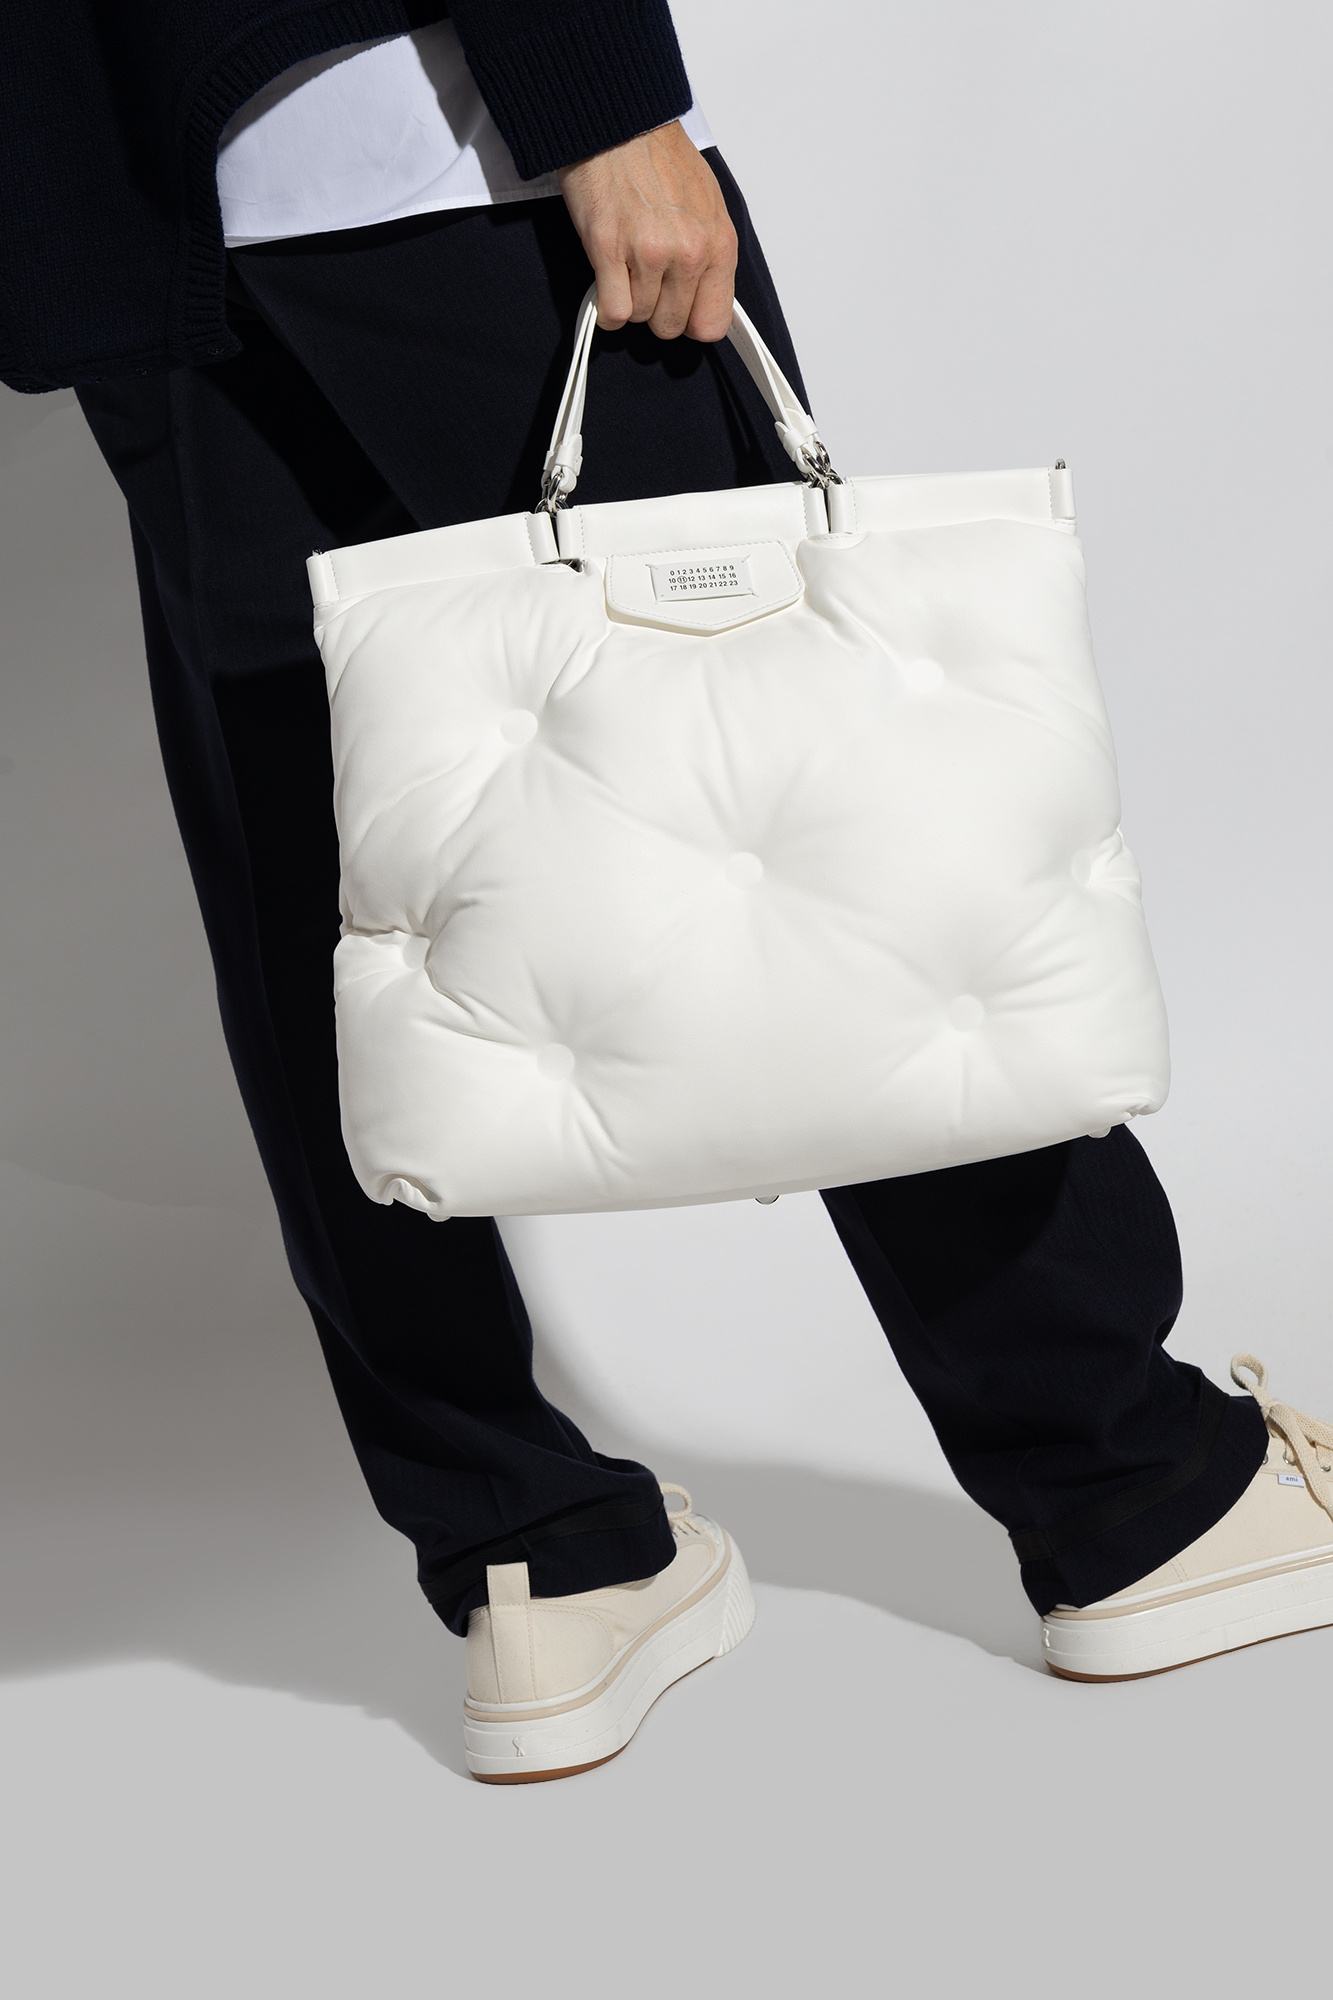 Maison Margiela ‘Glam Slam Large’ shopper bag